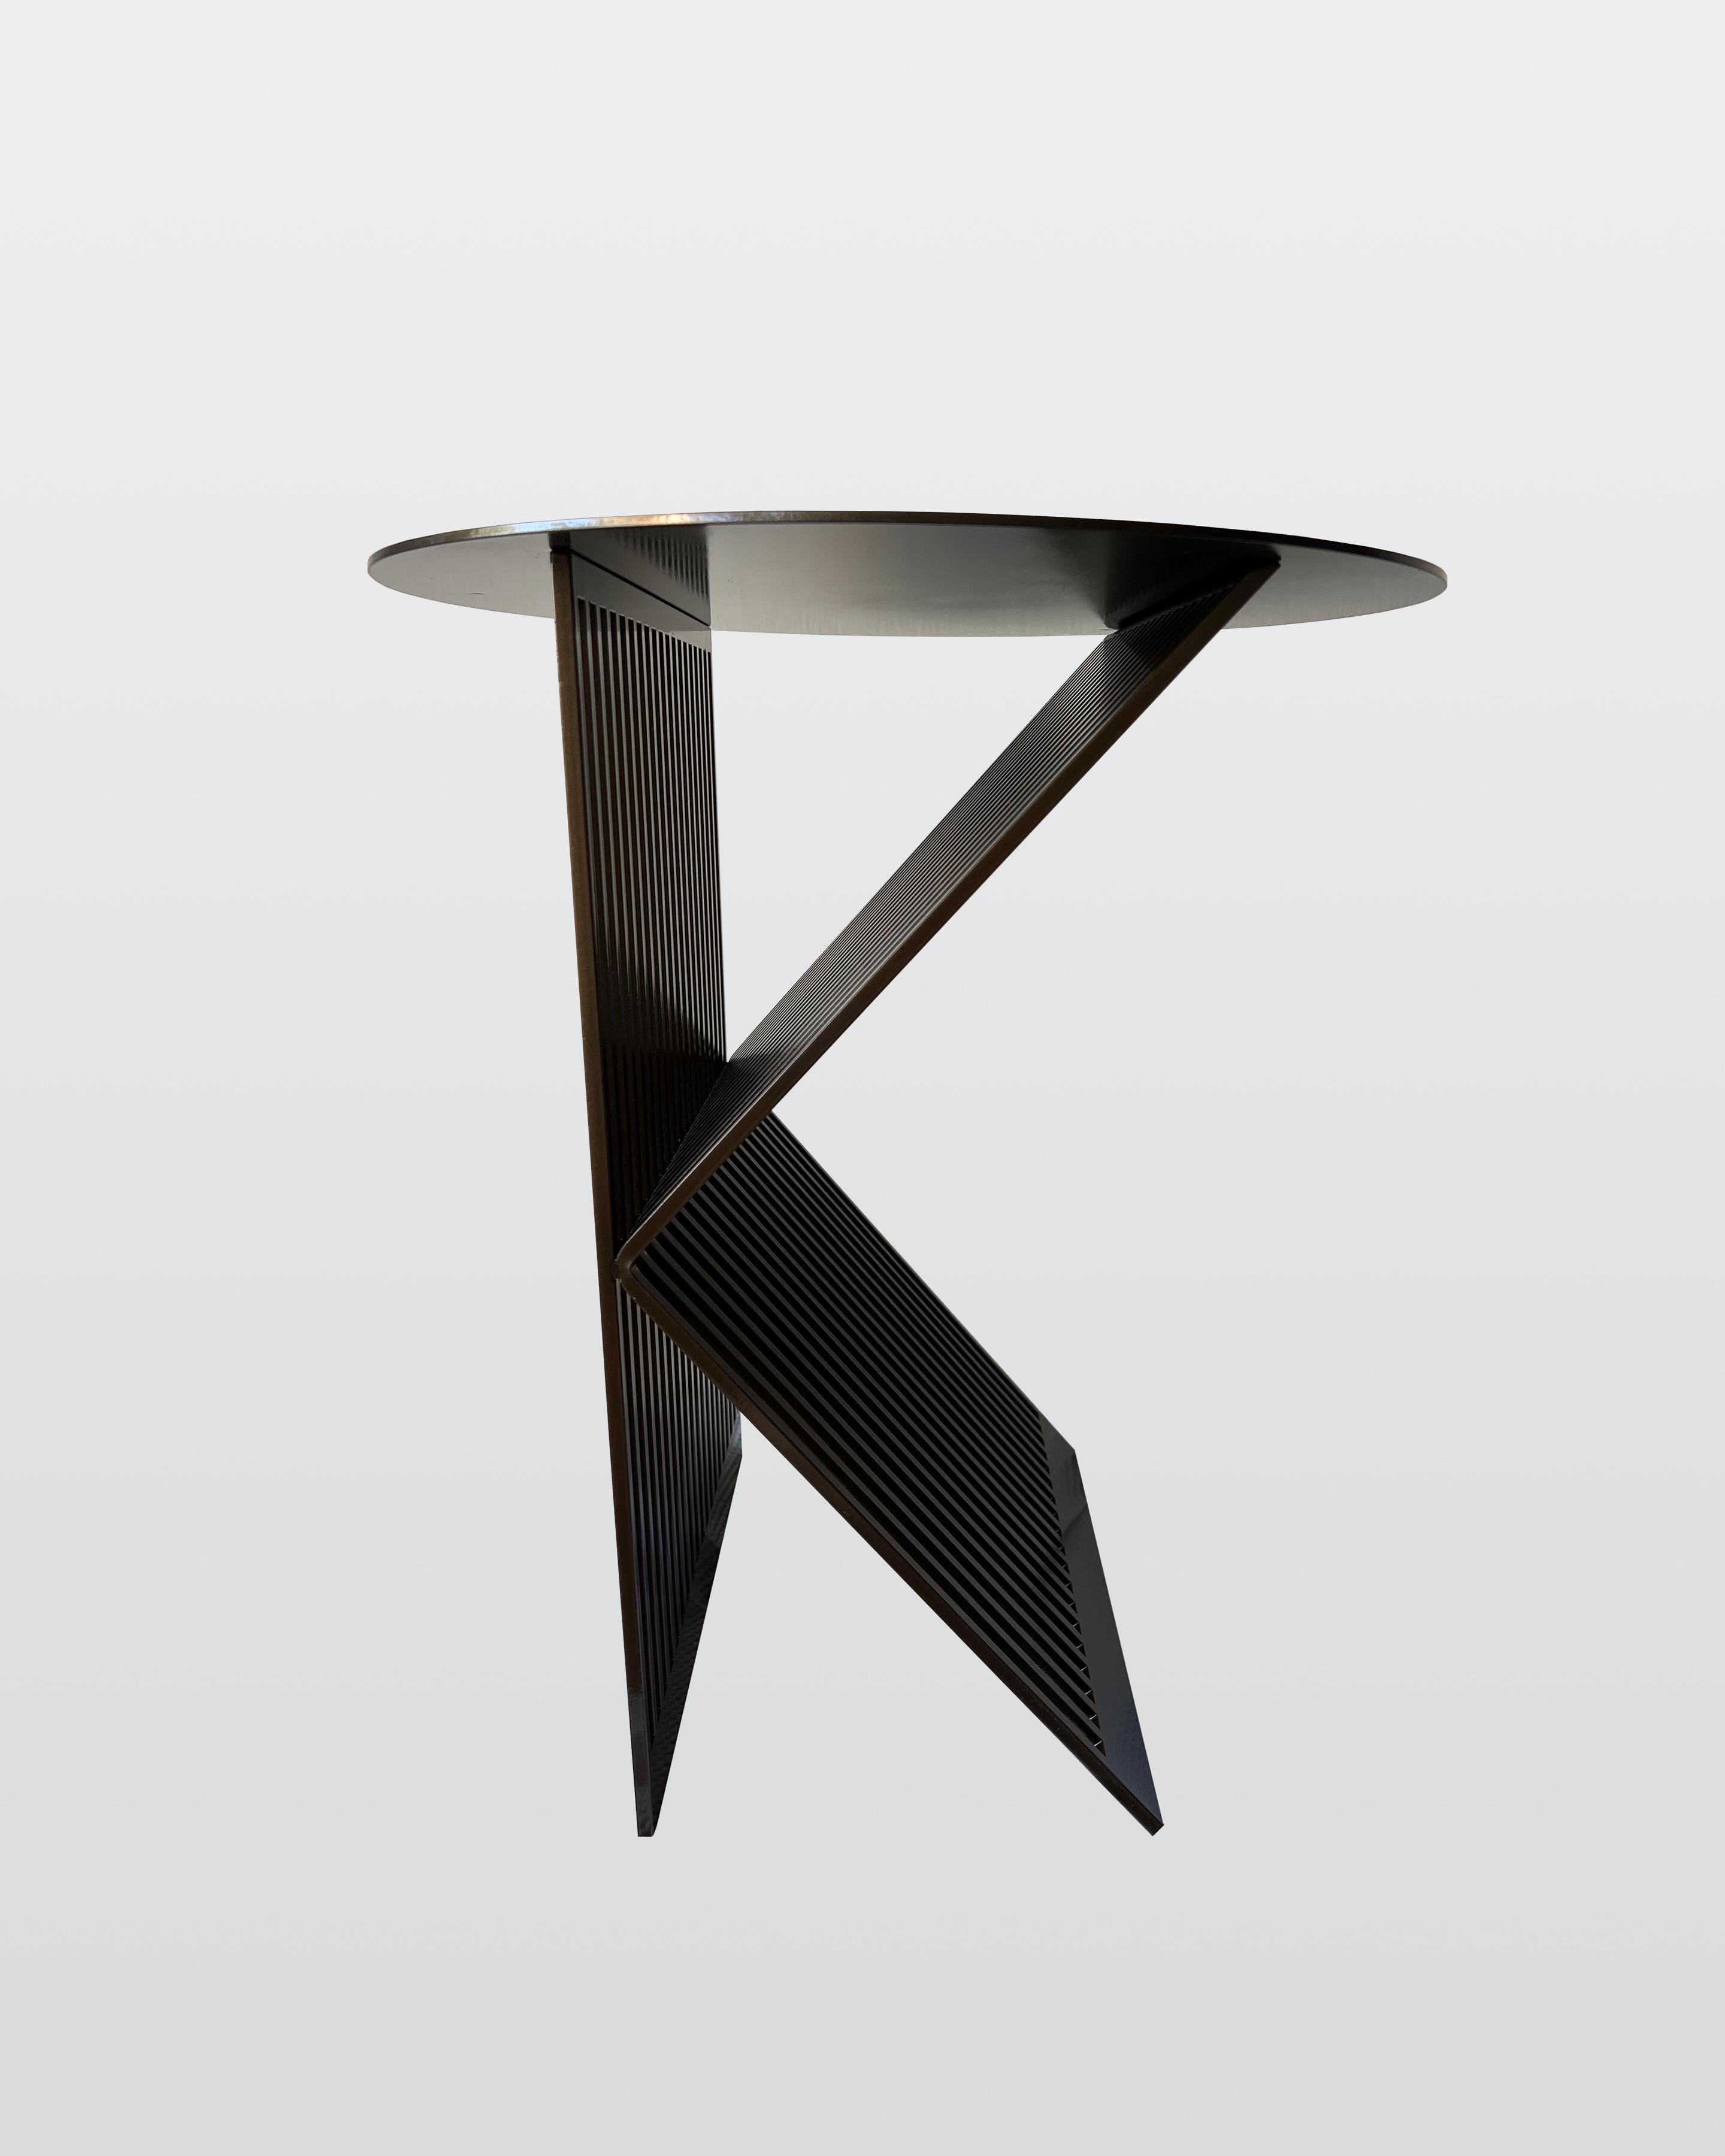 Die zeitgenössischen Linien der K Tische sind direkt von der persönlichen Leidenschaft für Architektur beeinflusst. Der Rhythmus zwischen Festkörper und Leere wird durch die Fortführung von Stahlstäben verstärkt, die eine stumme Stimme zwischen